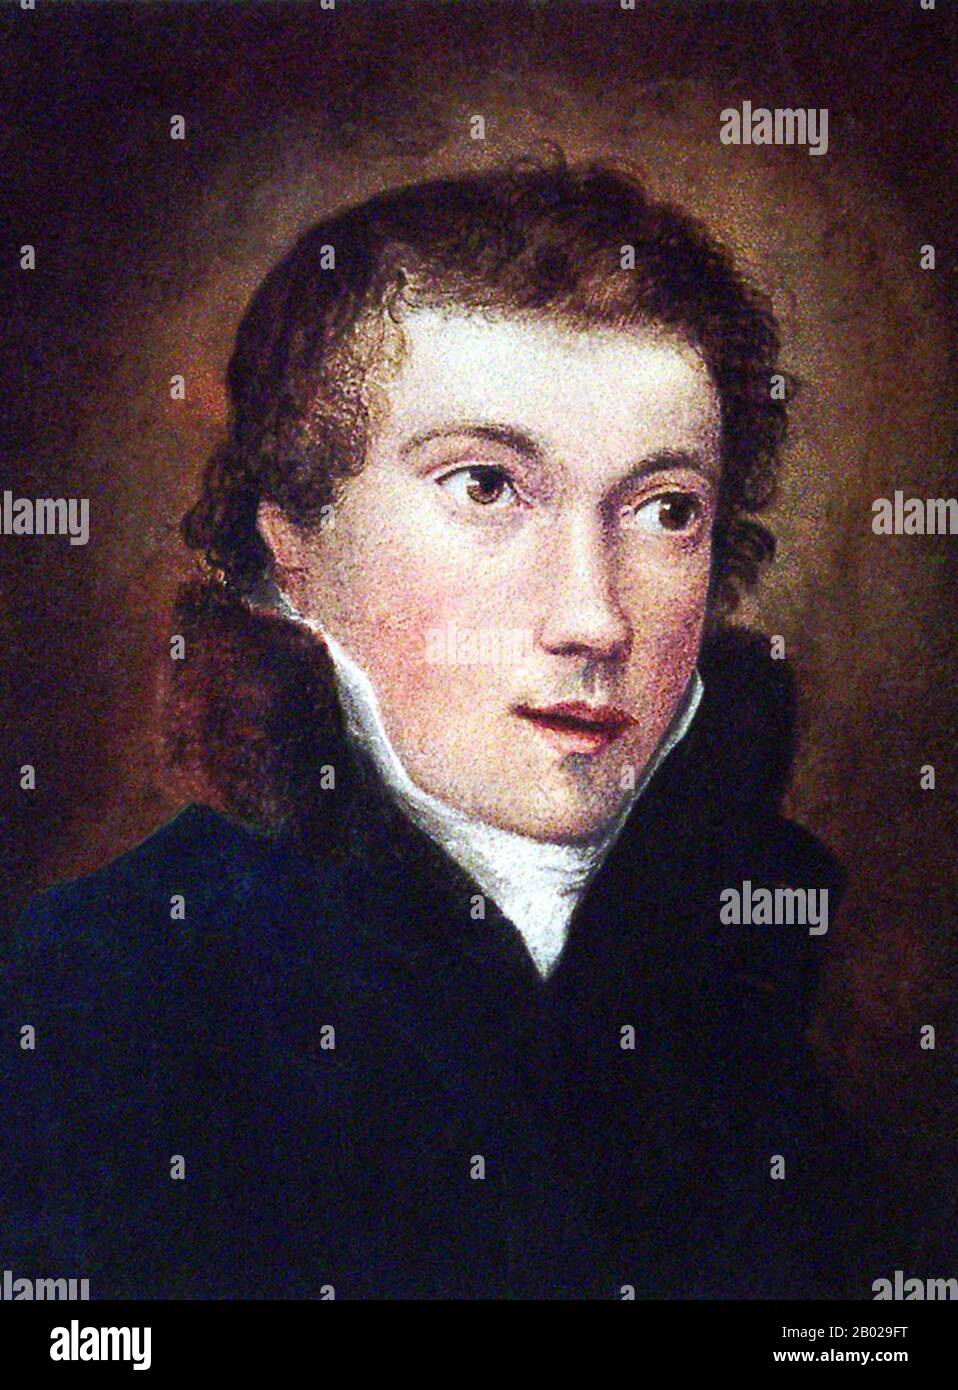 John Keats (31. Oktober 1795 - 23. Februar 1821) war ein englischer Romantischer Dichter. Er war eine der Hauptfiguren der zweiten Generation Romantischer Dichter zusammen mit Lord Byron und Percy Bysshe Shelley, obwohl seine Arbeit erst vier Jahre vor seinem Tod in der Veröffentlichung war. Obwohl seine Gedichte im Laufe seines Lebens von Kritikern nicht allgemein gut aufgenommen wurden, wuchs sein Ruf nach seinem Tod, so dass er Ende des 19. Jahrhunderts zu einem der beliebtesten aller englischen Dichter geworden war. Er hatte maßgeblichen Einfluss auf eine Vielzahl von Dichtern und Schriftstellern. Jorge Luis Borges erklärte das Stockfoto